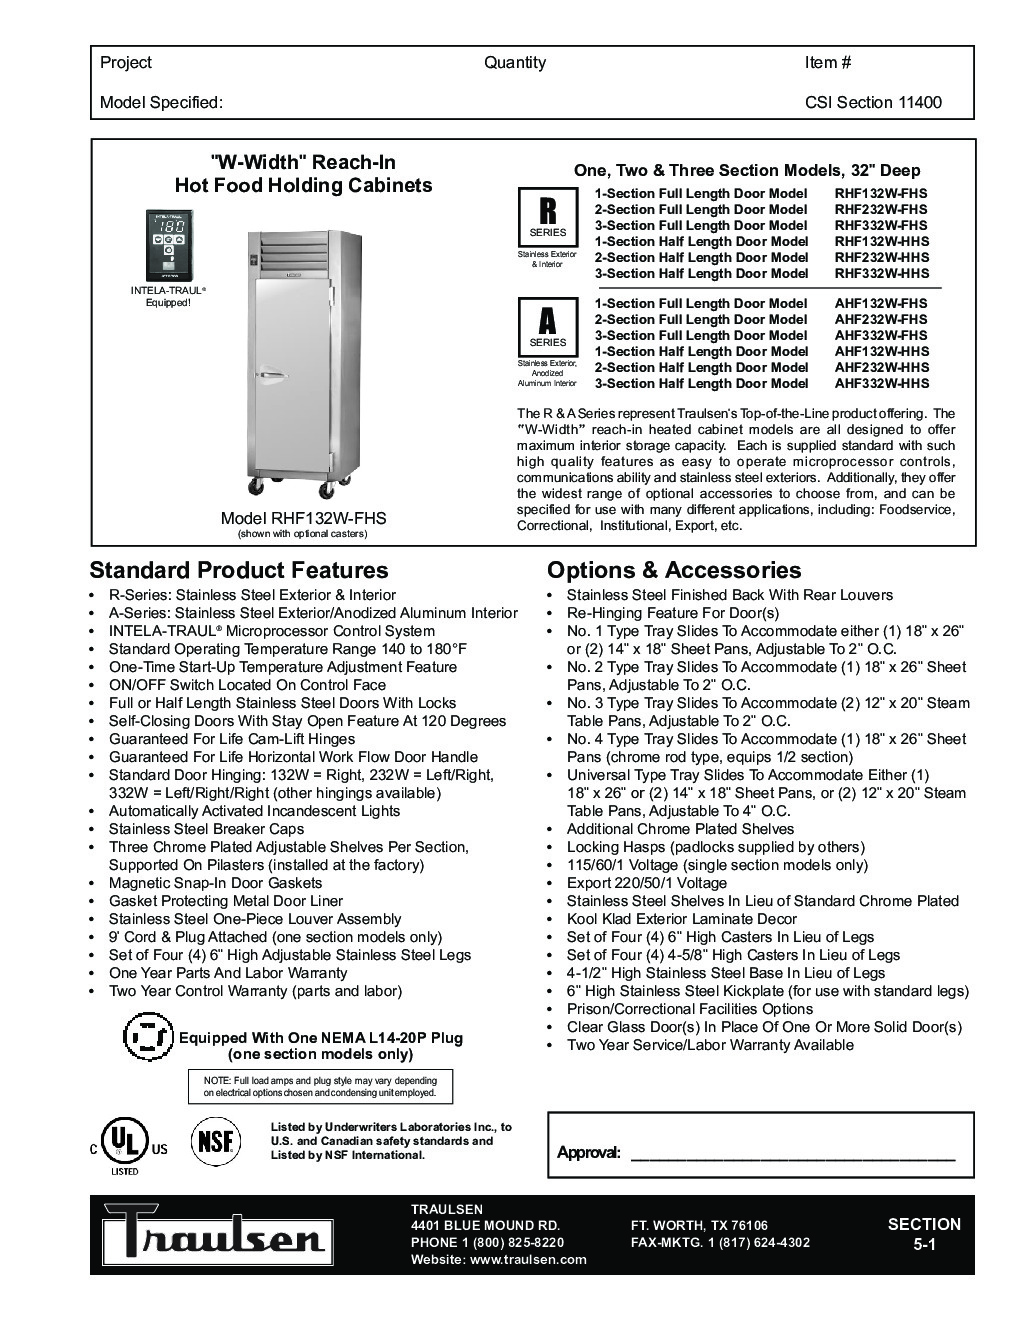 Traulsen RHF232W-HHG Reach-In Heated Cabinet